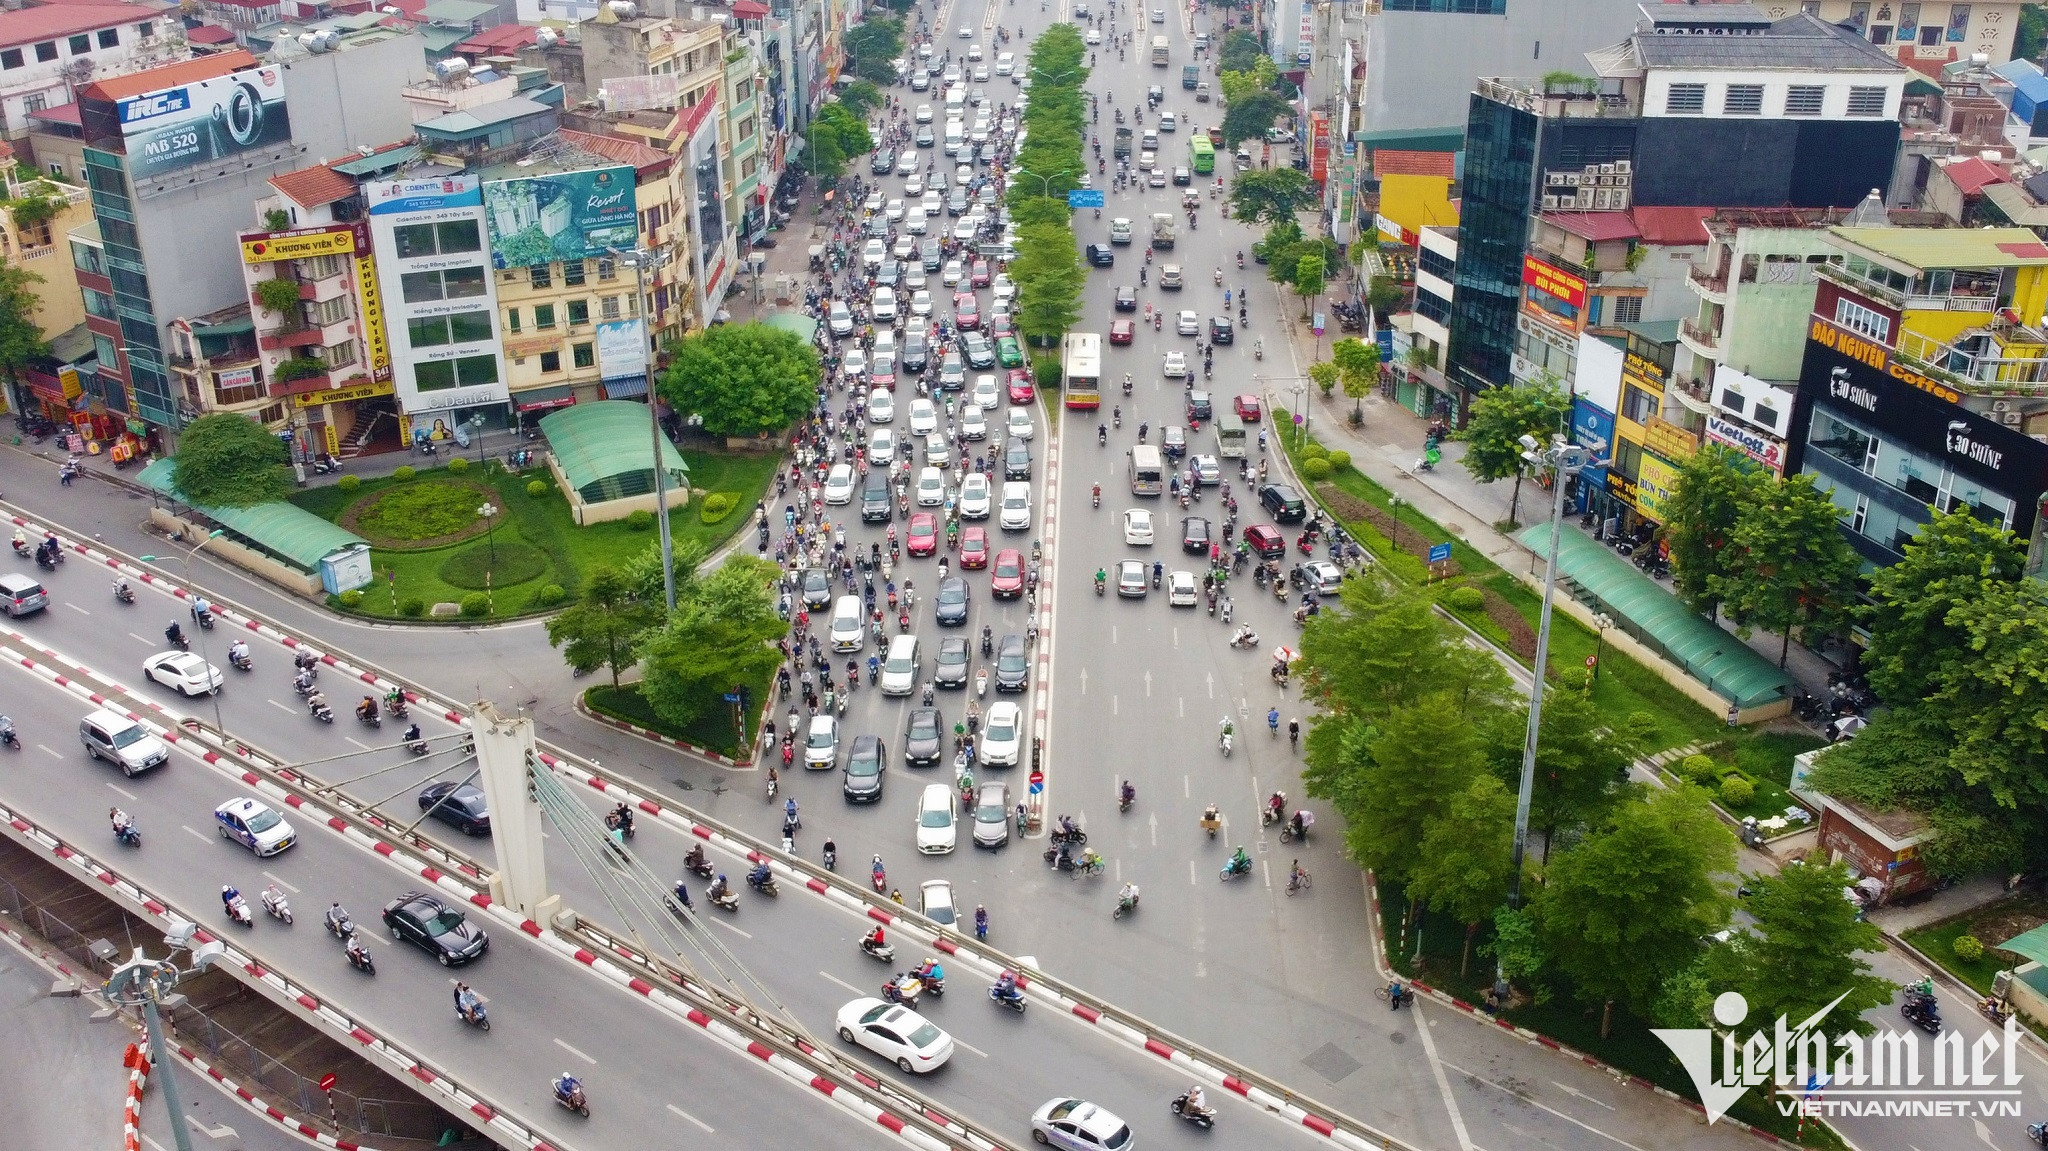 Theo Sở GTVT Hà Nội, sau giai đoạn đầu thí điểm, kết quả cho thấy, ùn tắc tại các khu vực này đã giảm đáng kể, giao thông trở nên thông thoáng hơn. Sở GTVT Hà Nội quyết định kéo dài thời gian thí điểm đến 22/10/2022.